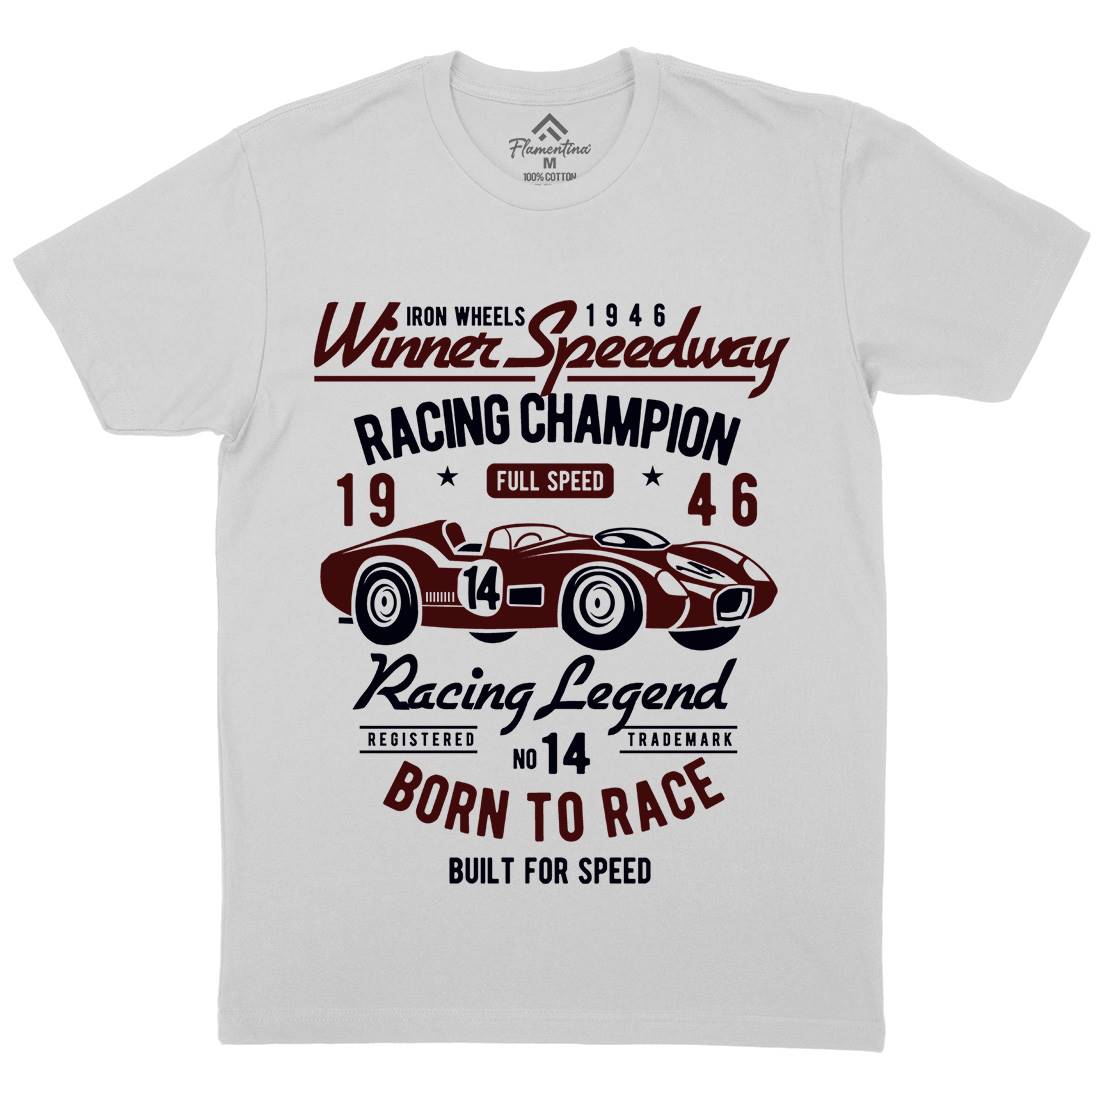 Winner Speedway Mens Crew Neck T-Shirt Cars B476